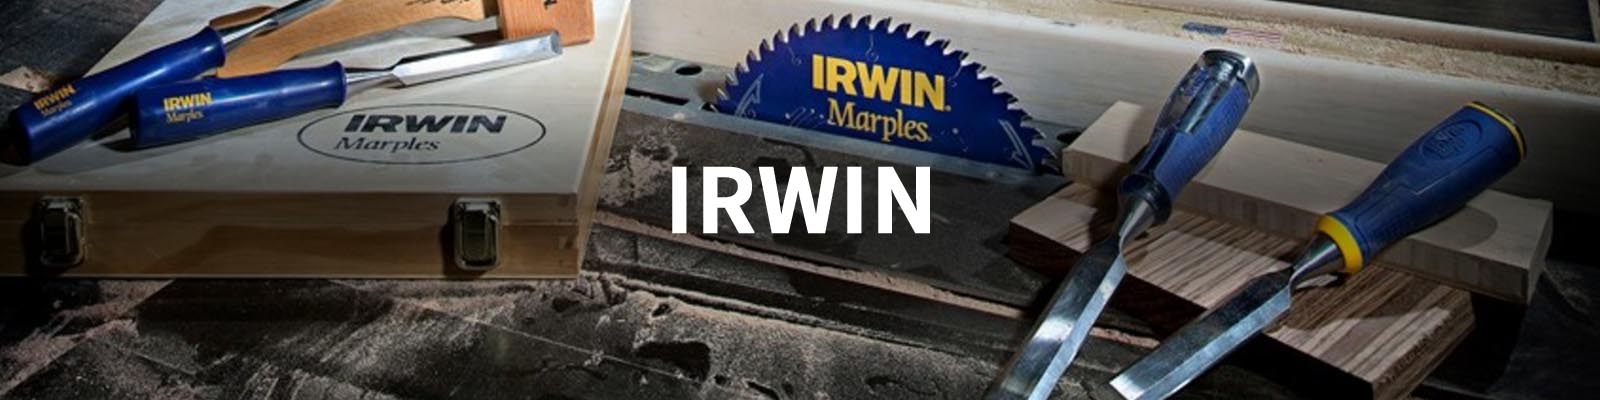 Irwin Hand Tools in Workshop